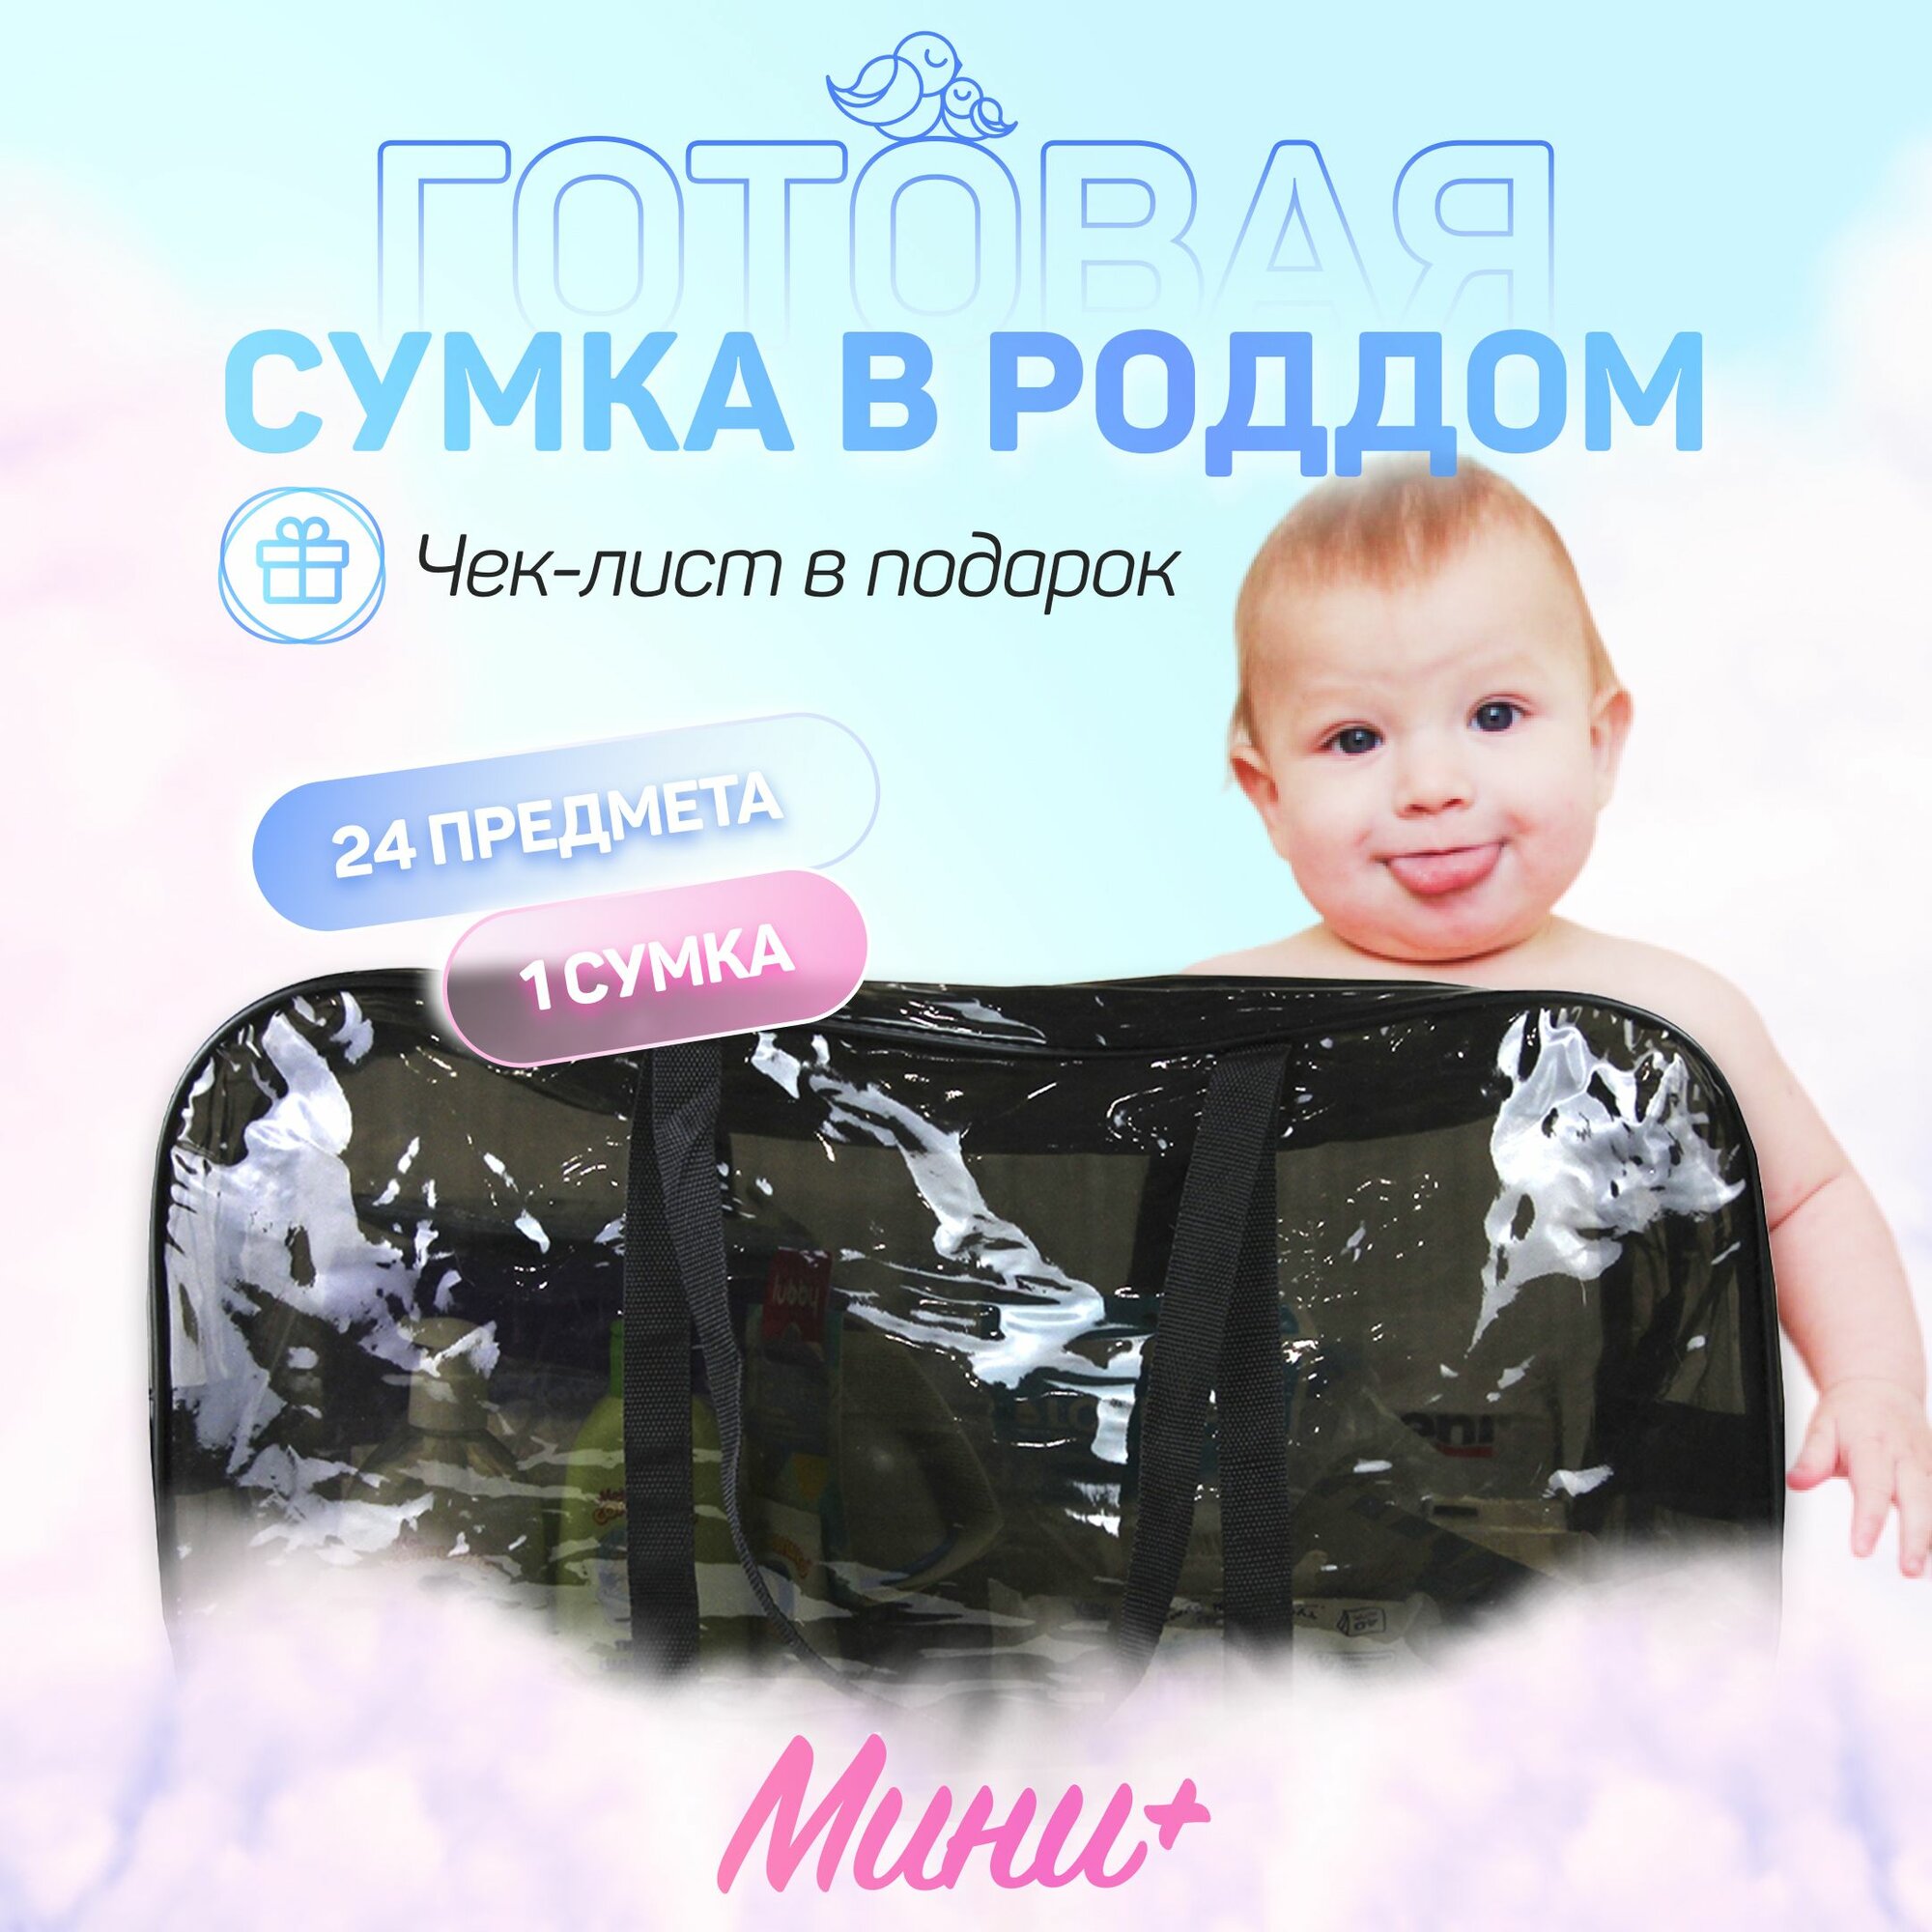 Сумка в роддом для мамы и малыша готовая с наполнением, 24 предмета + 1 сумка, комплектация "Мини+", черная